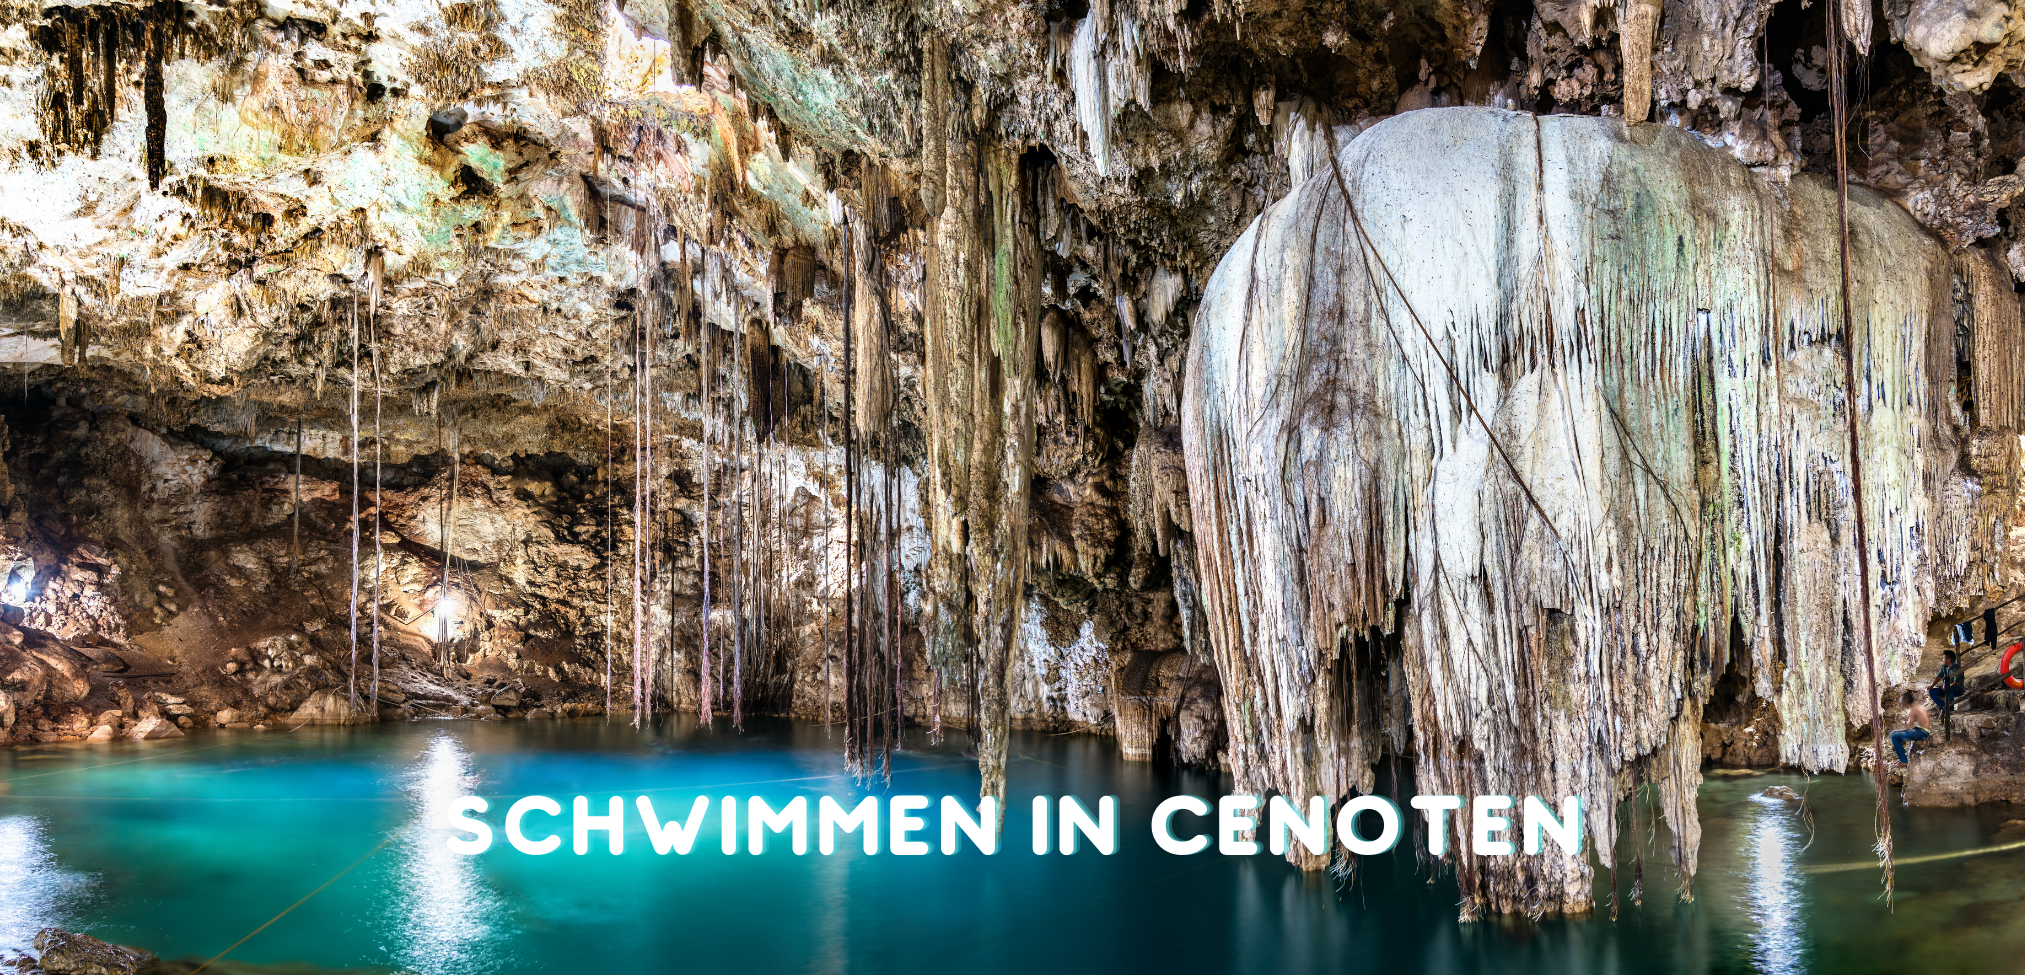 Yucatan Halbinsel: Schwimmen in einer Cenote